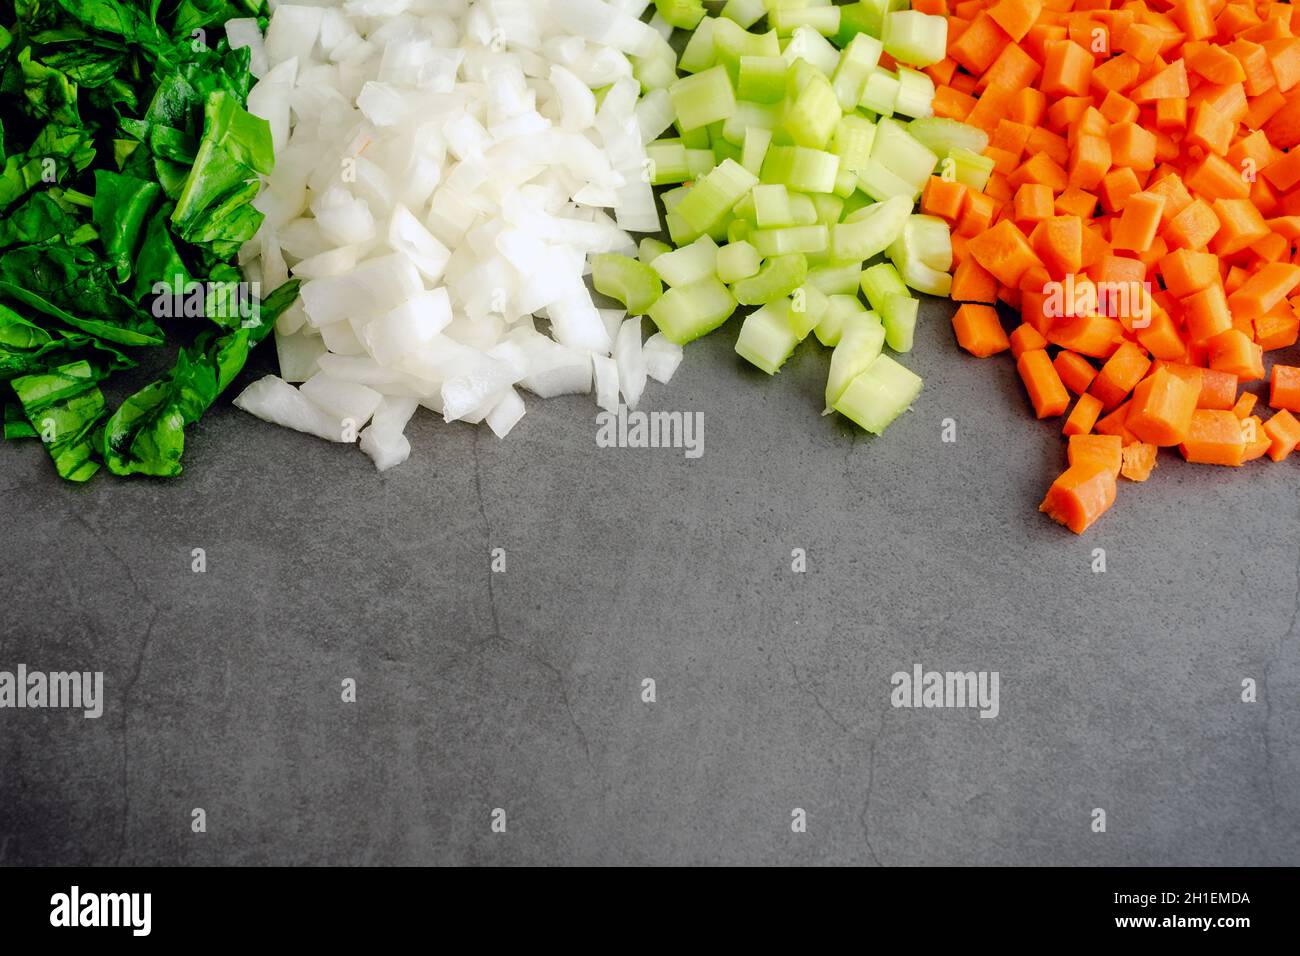 Épinards hachés avec des oignons, du céleri et des carottes en dés : légumes hachés sur fond sombre avec de la place pour la copie Banque D'Images